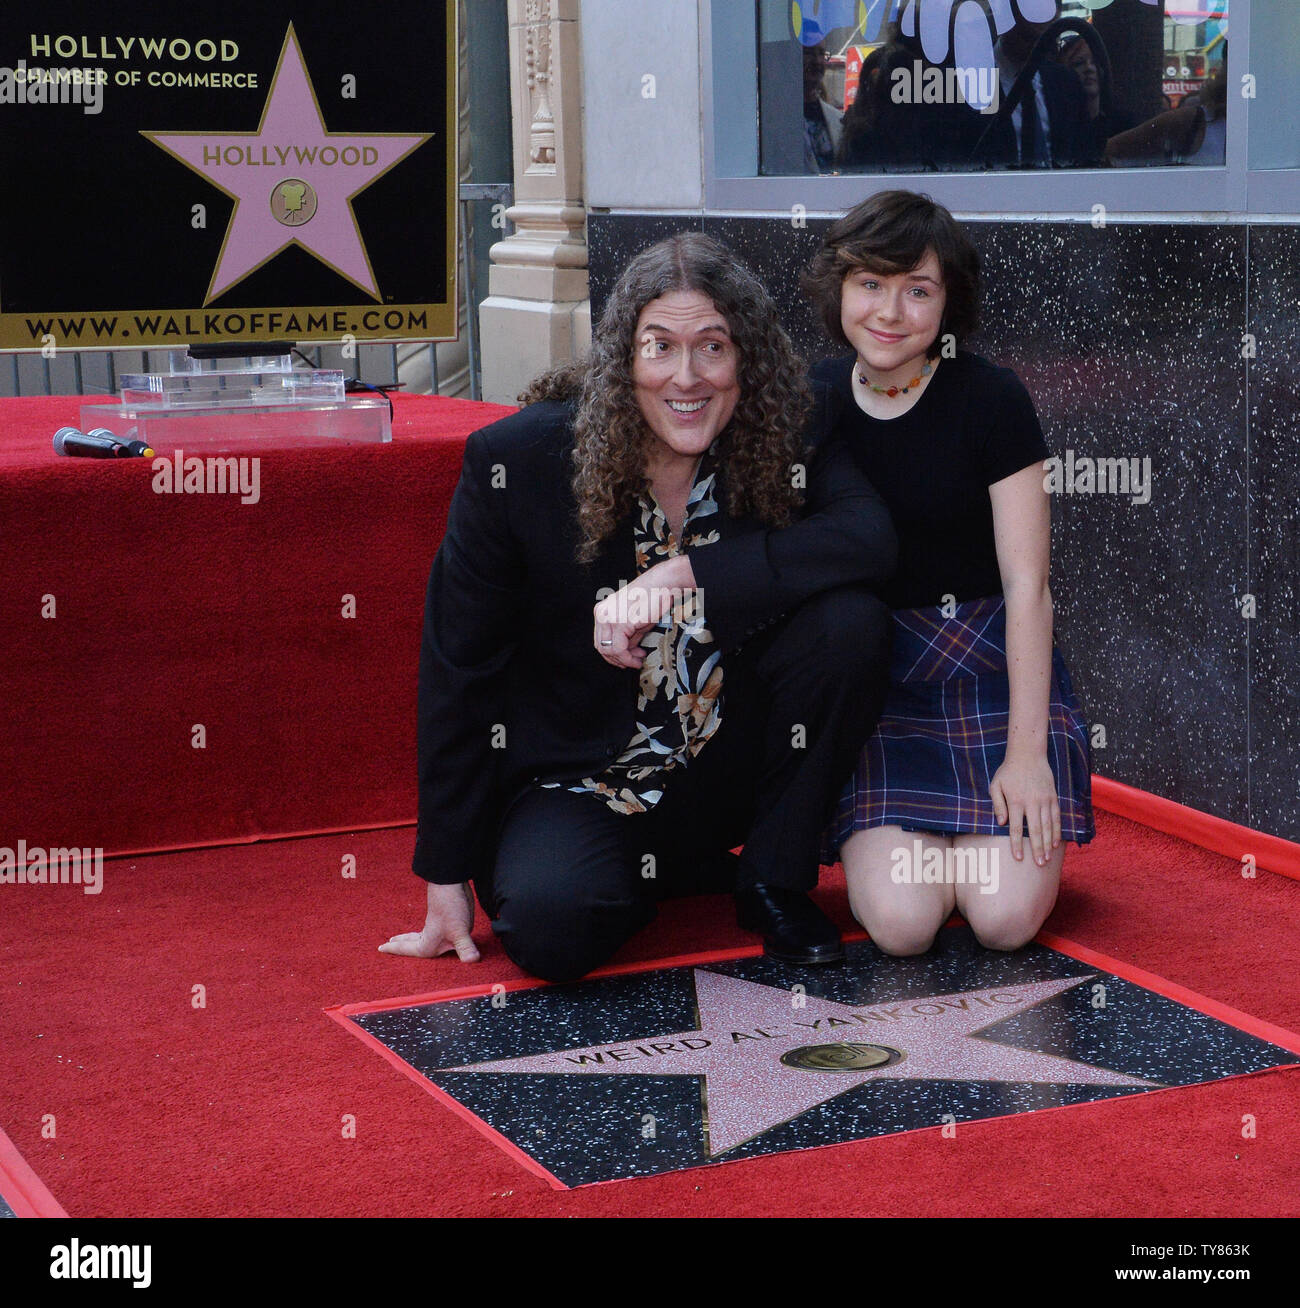 Grammy-winning encore de satirique 'Weird Al' Yankovic est rejoint par son épouse Suzanne Yankovic (L) et leur fille Nina Yankovic (R) au cours d'une cérémonie de dévoilement d'honorer avec le 2,643ème étoile sur le Hollywood Walk of Fame à Los Angeles le 27 août 2018. Photo par Jim Ruymen/UPI Banque D'Images